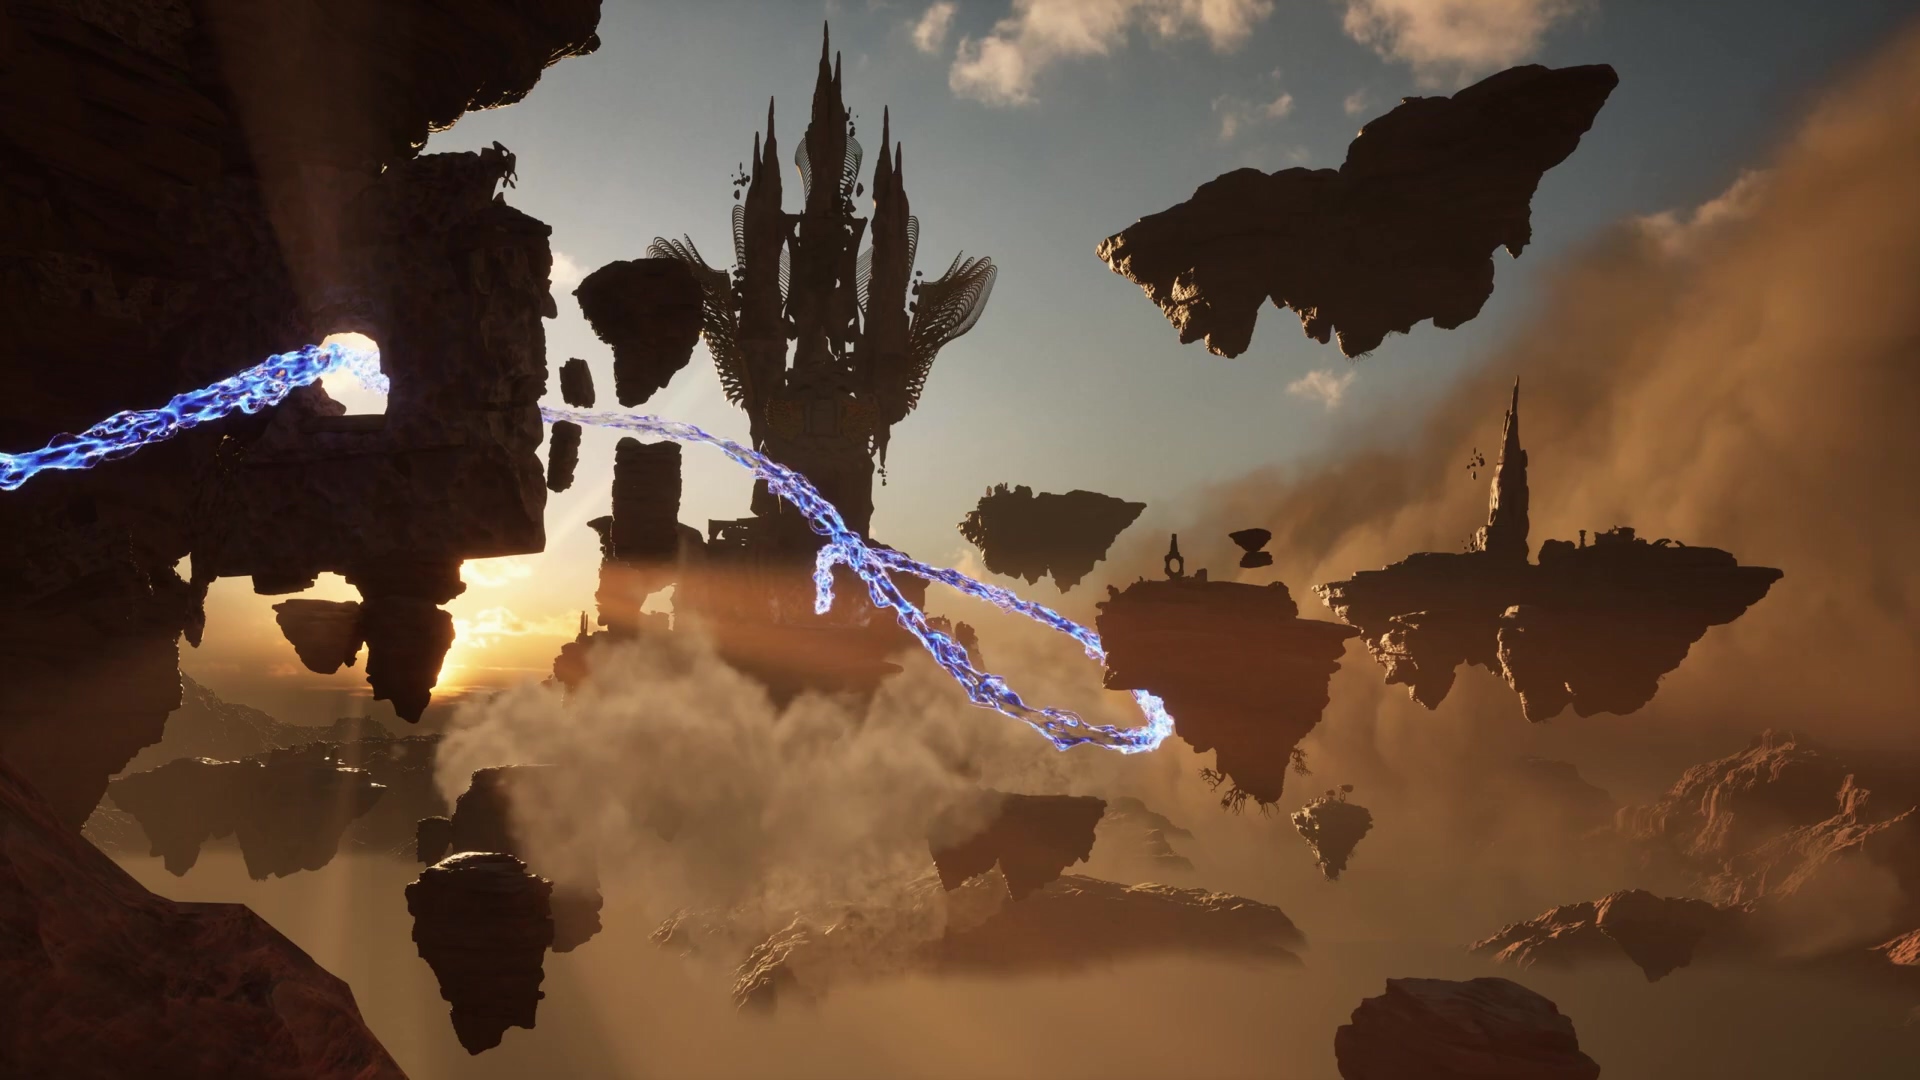 虚幻5.1的秀场《不朽者传奇》游戏内环境展示 二次世界 第9张